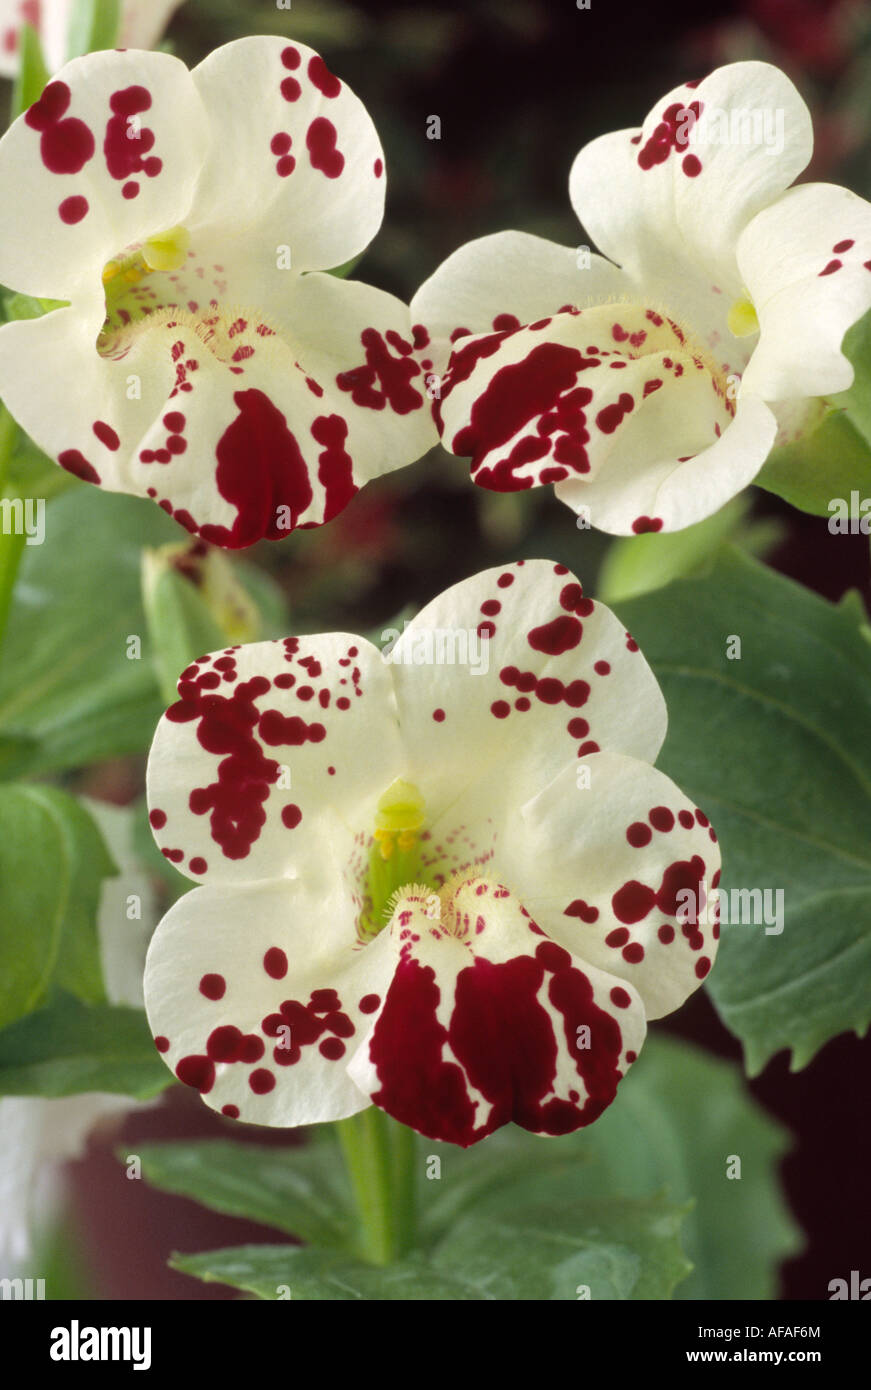 Mimulus 'Magic Points chauds" (Monkey flower, musc) près de trois fleurs  blanc crème avec des marquages rouges Photo Stock - Alamy